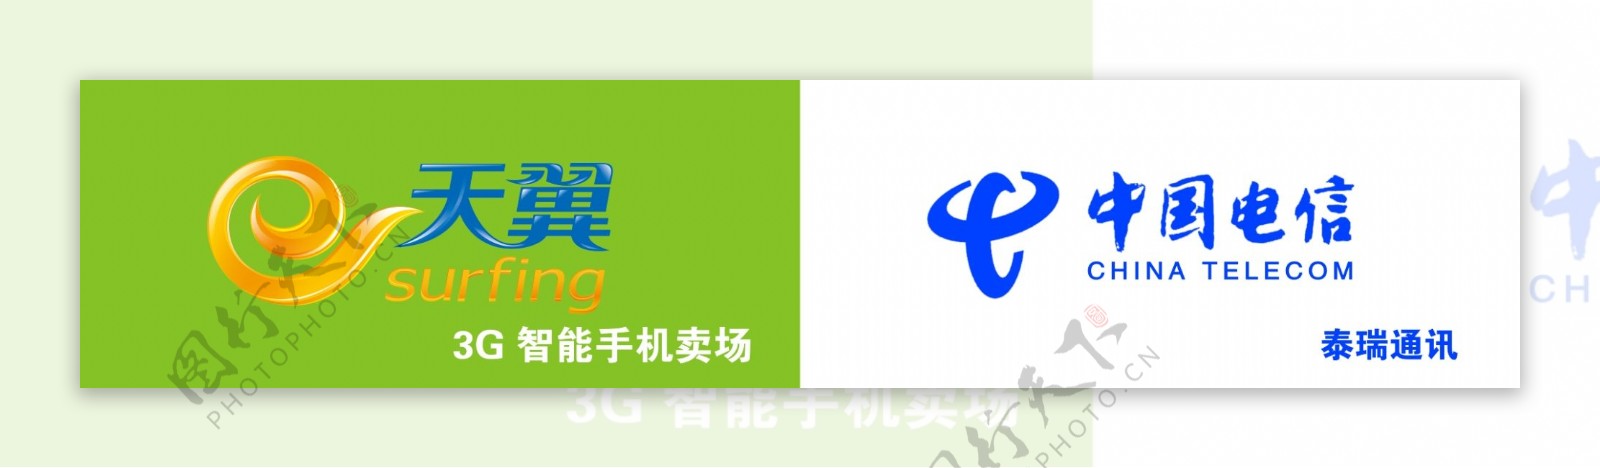 中国电信喷绘广告牌图片